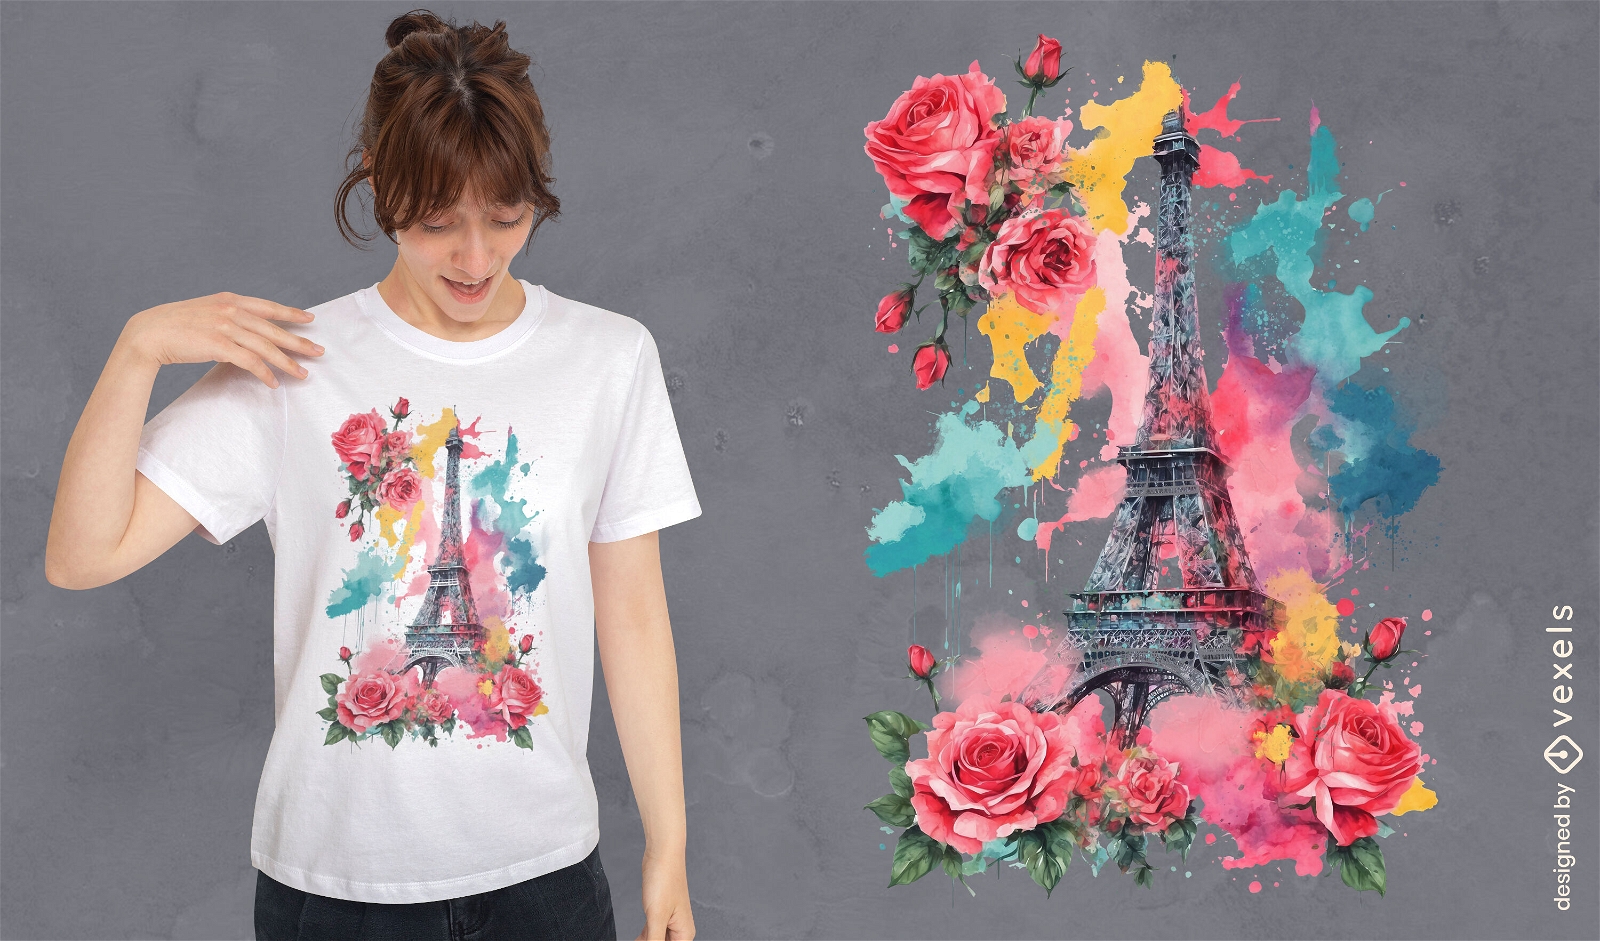 Dise?o de camiseta floral de la Torre Eiffel de Par?s.